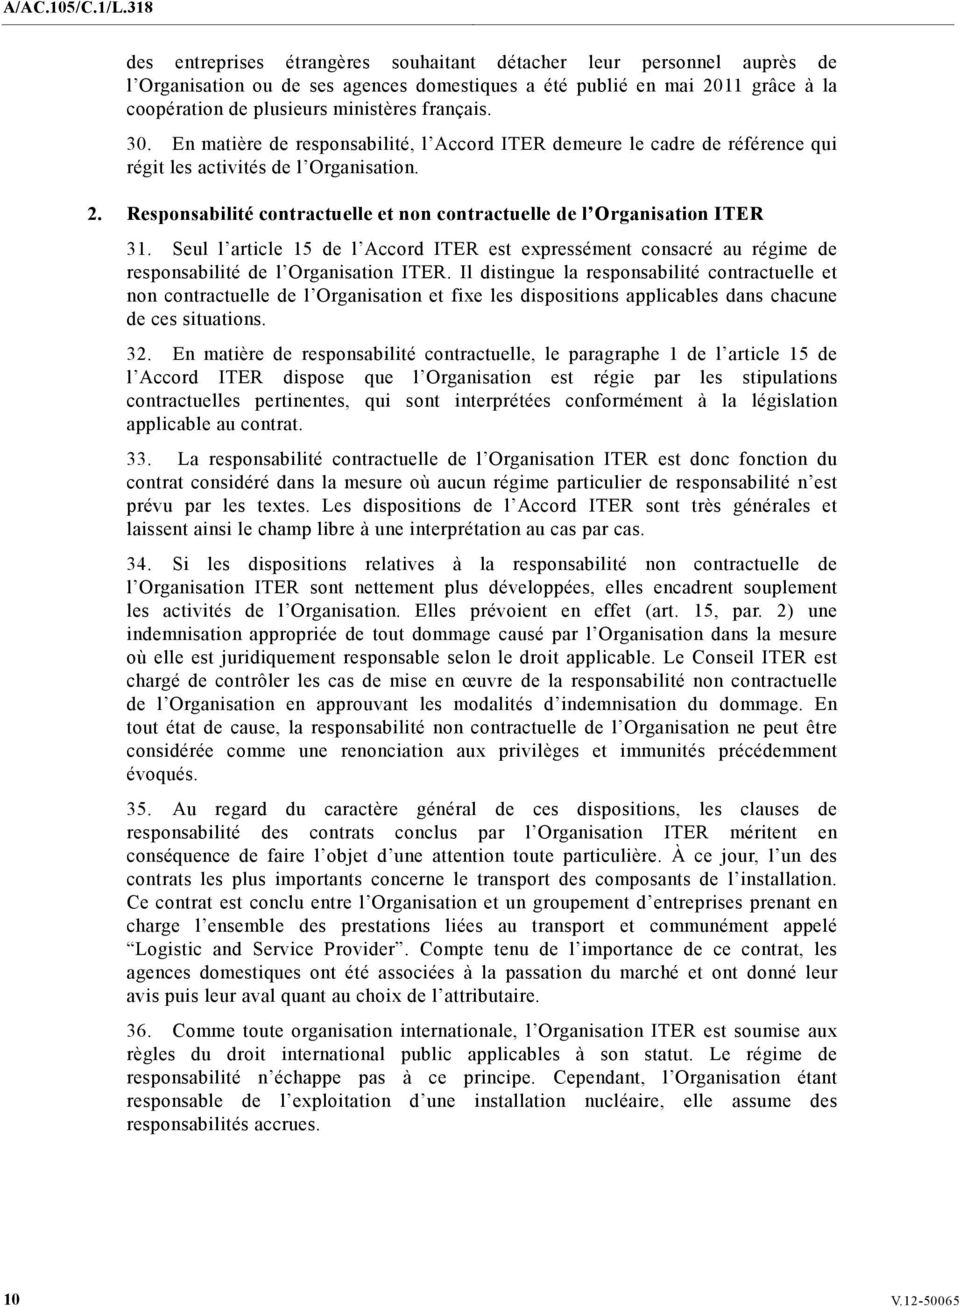 Seul l article 15 de l Accord ITER est expressément consacré au régime de responsabilité de l Organisation ITER.